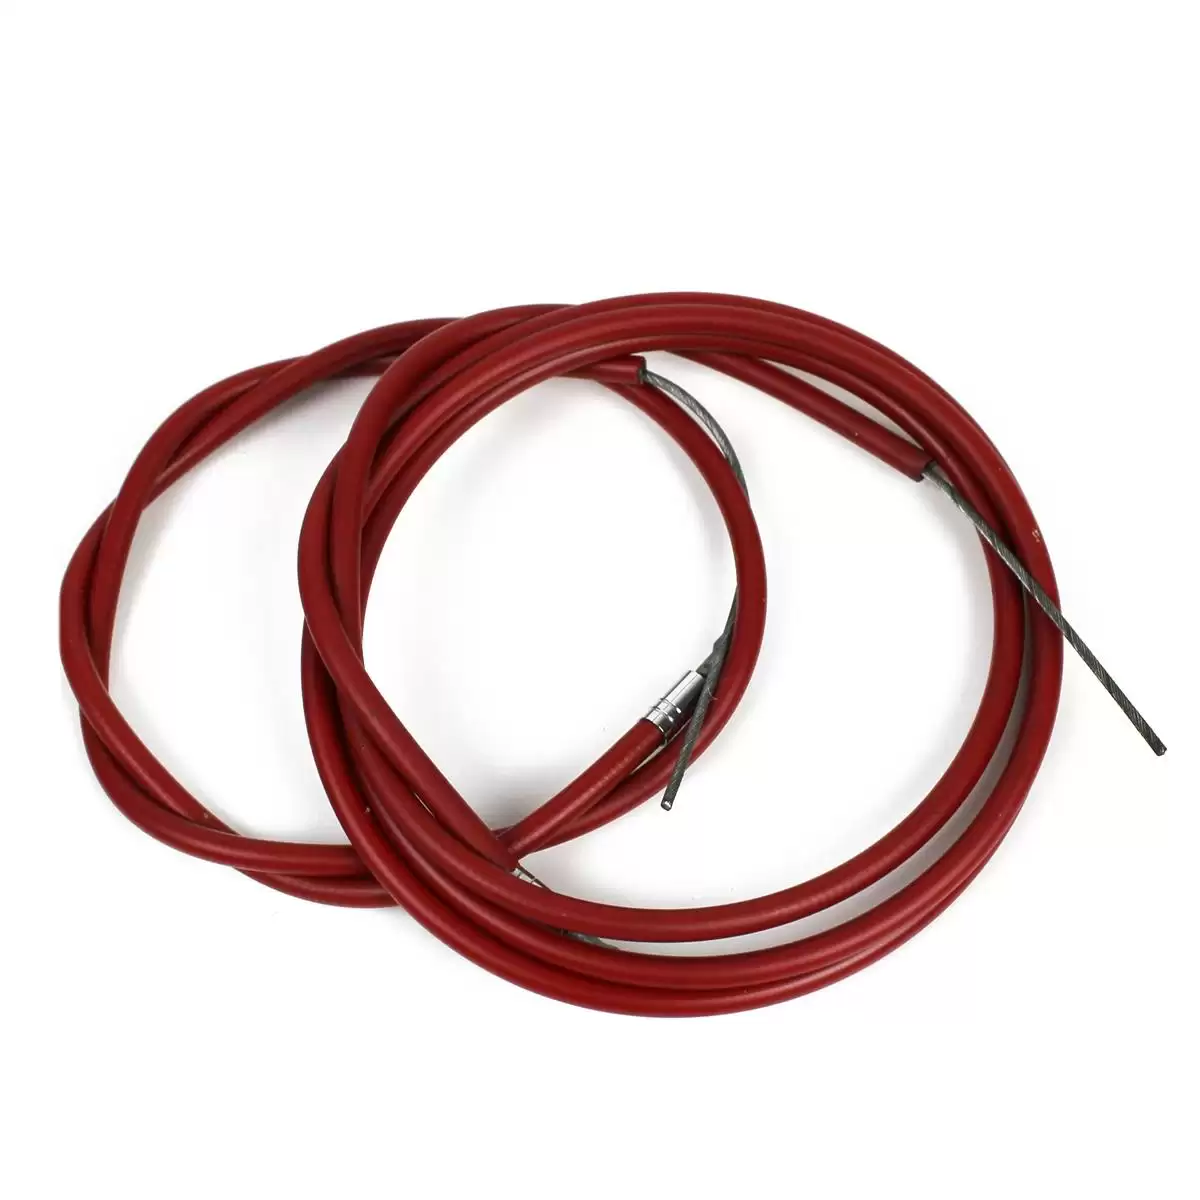 Kit carcasa y cable de freno delantero y trasero rojo heroico vintage - image